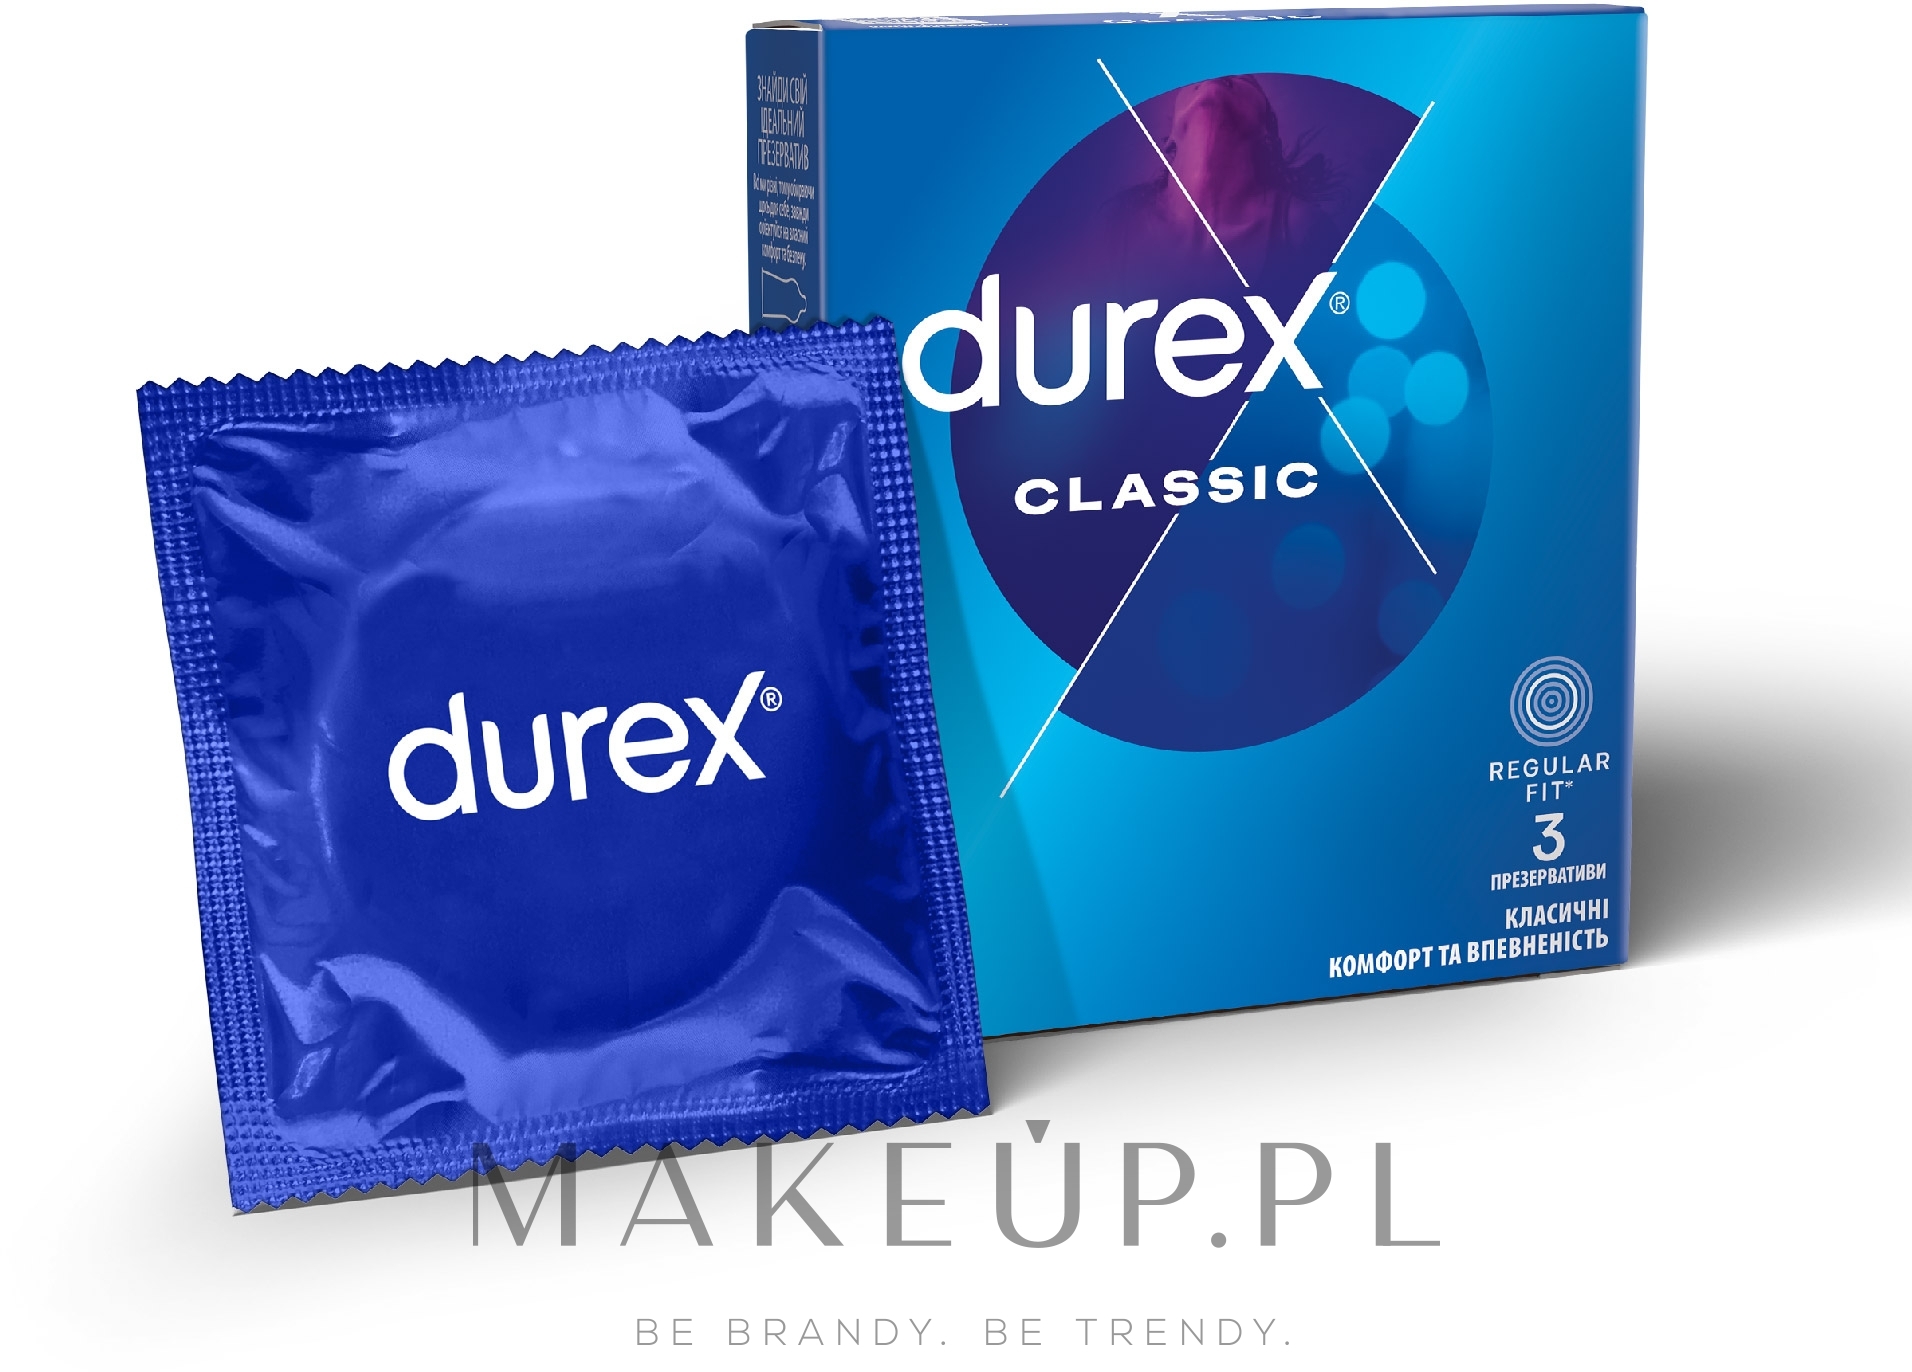 Prezerwatywy klasyczne, 3 szt. - Durex Classic  — Zdjęcie 3 szt.